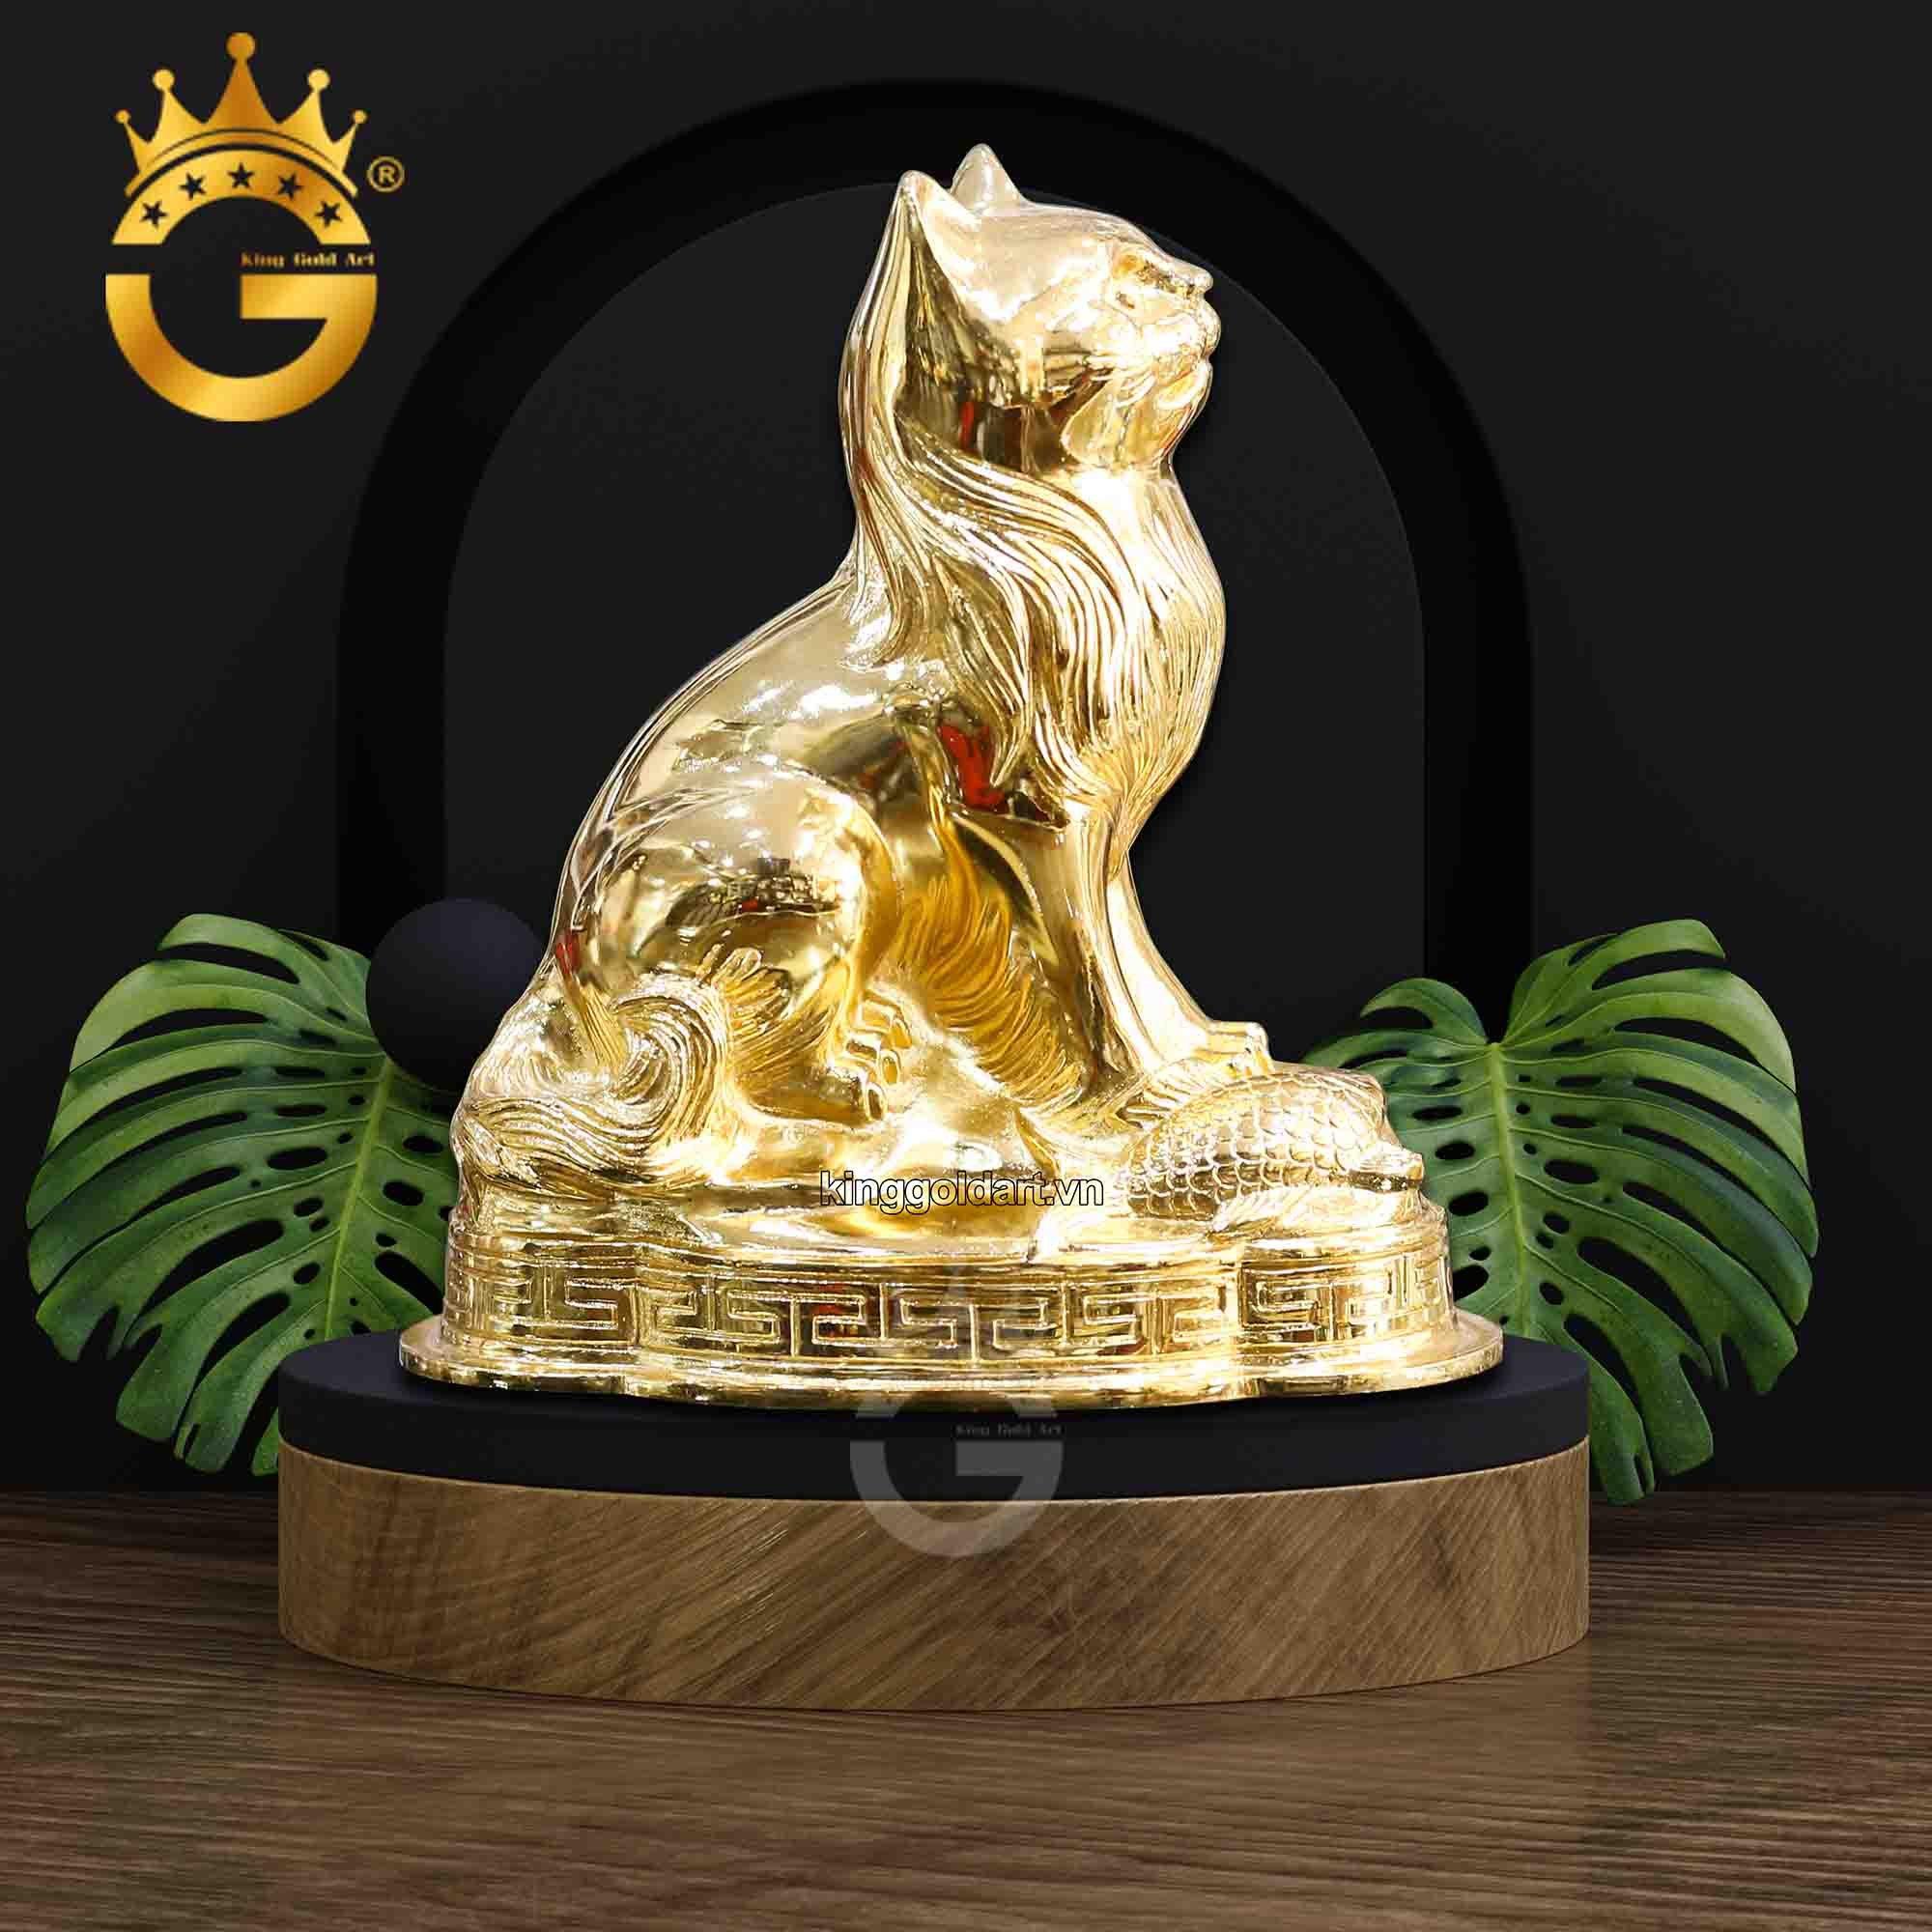 Giá bán tượng mèo mạ vàng 24k của King Gold Art